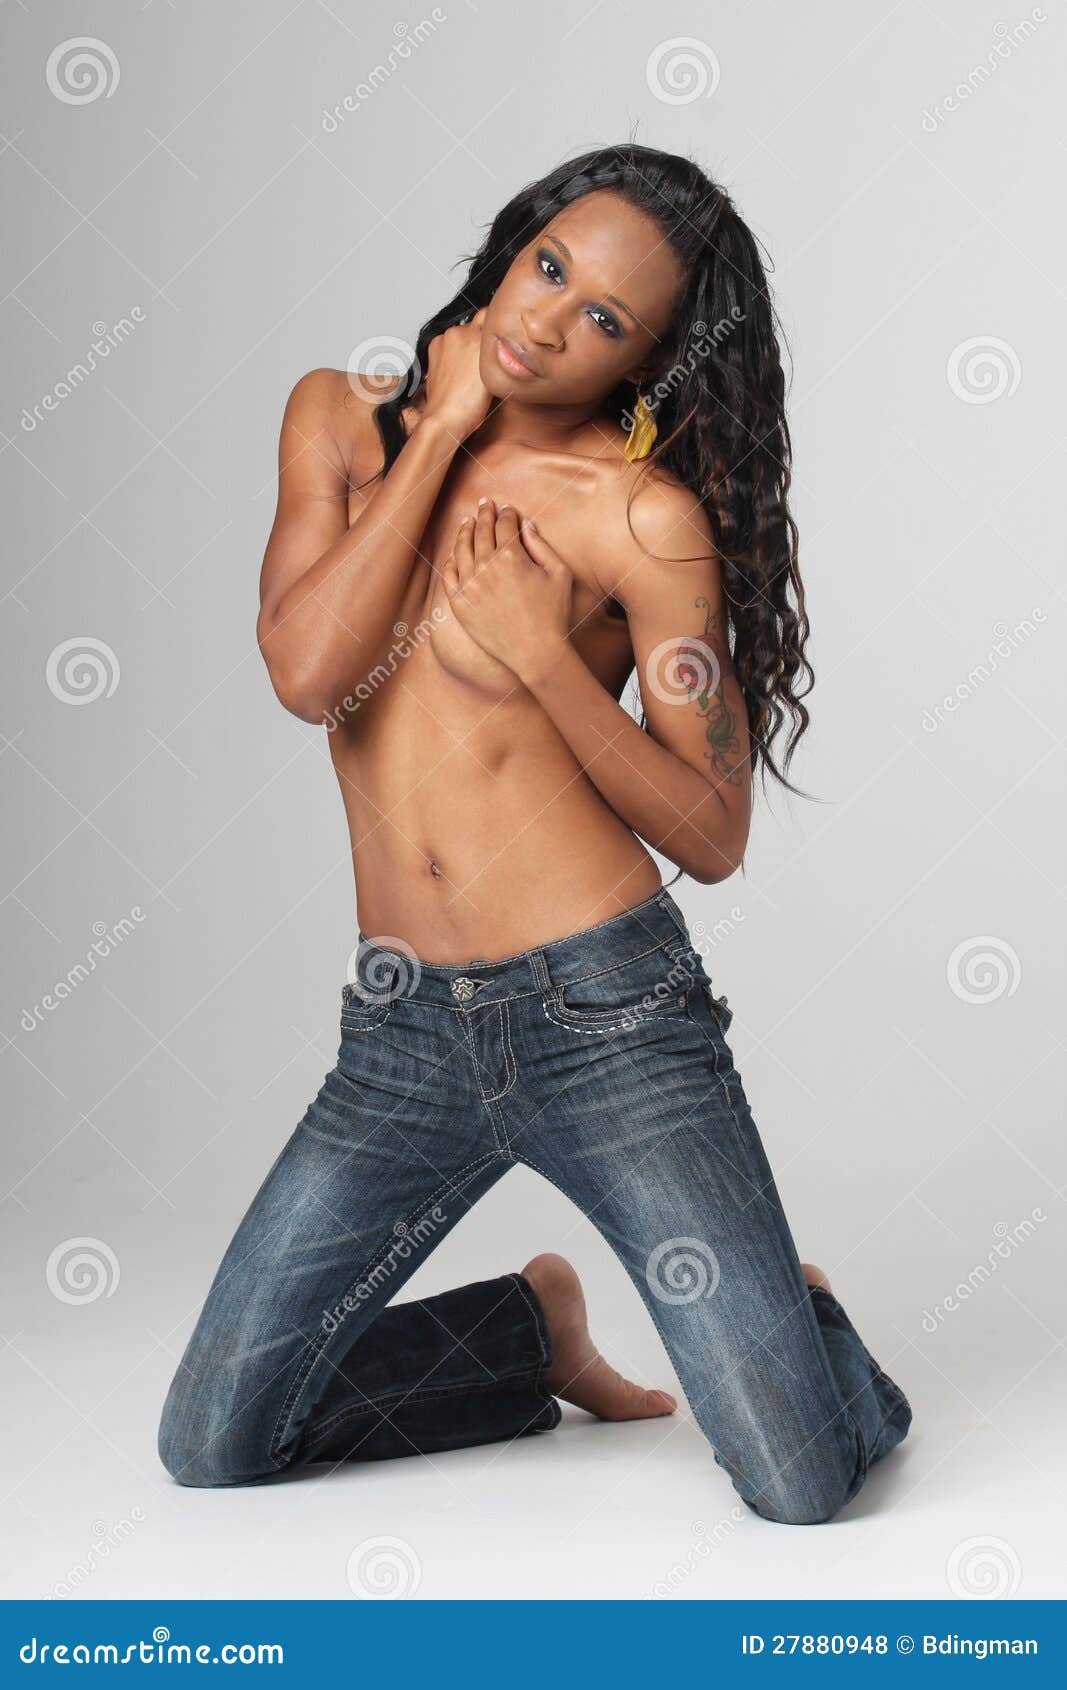 Best of Topless women wearing jeans